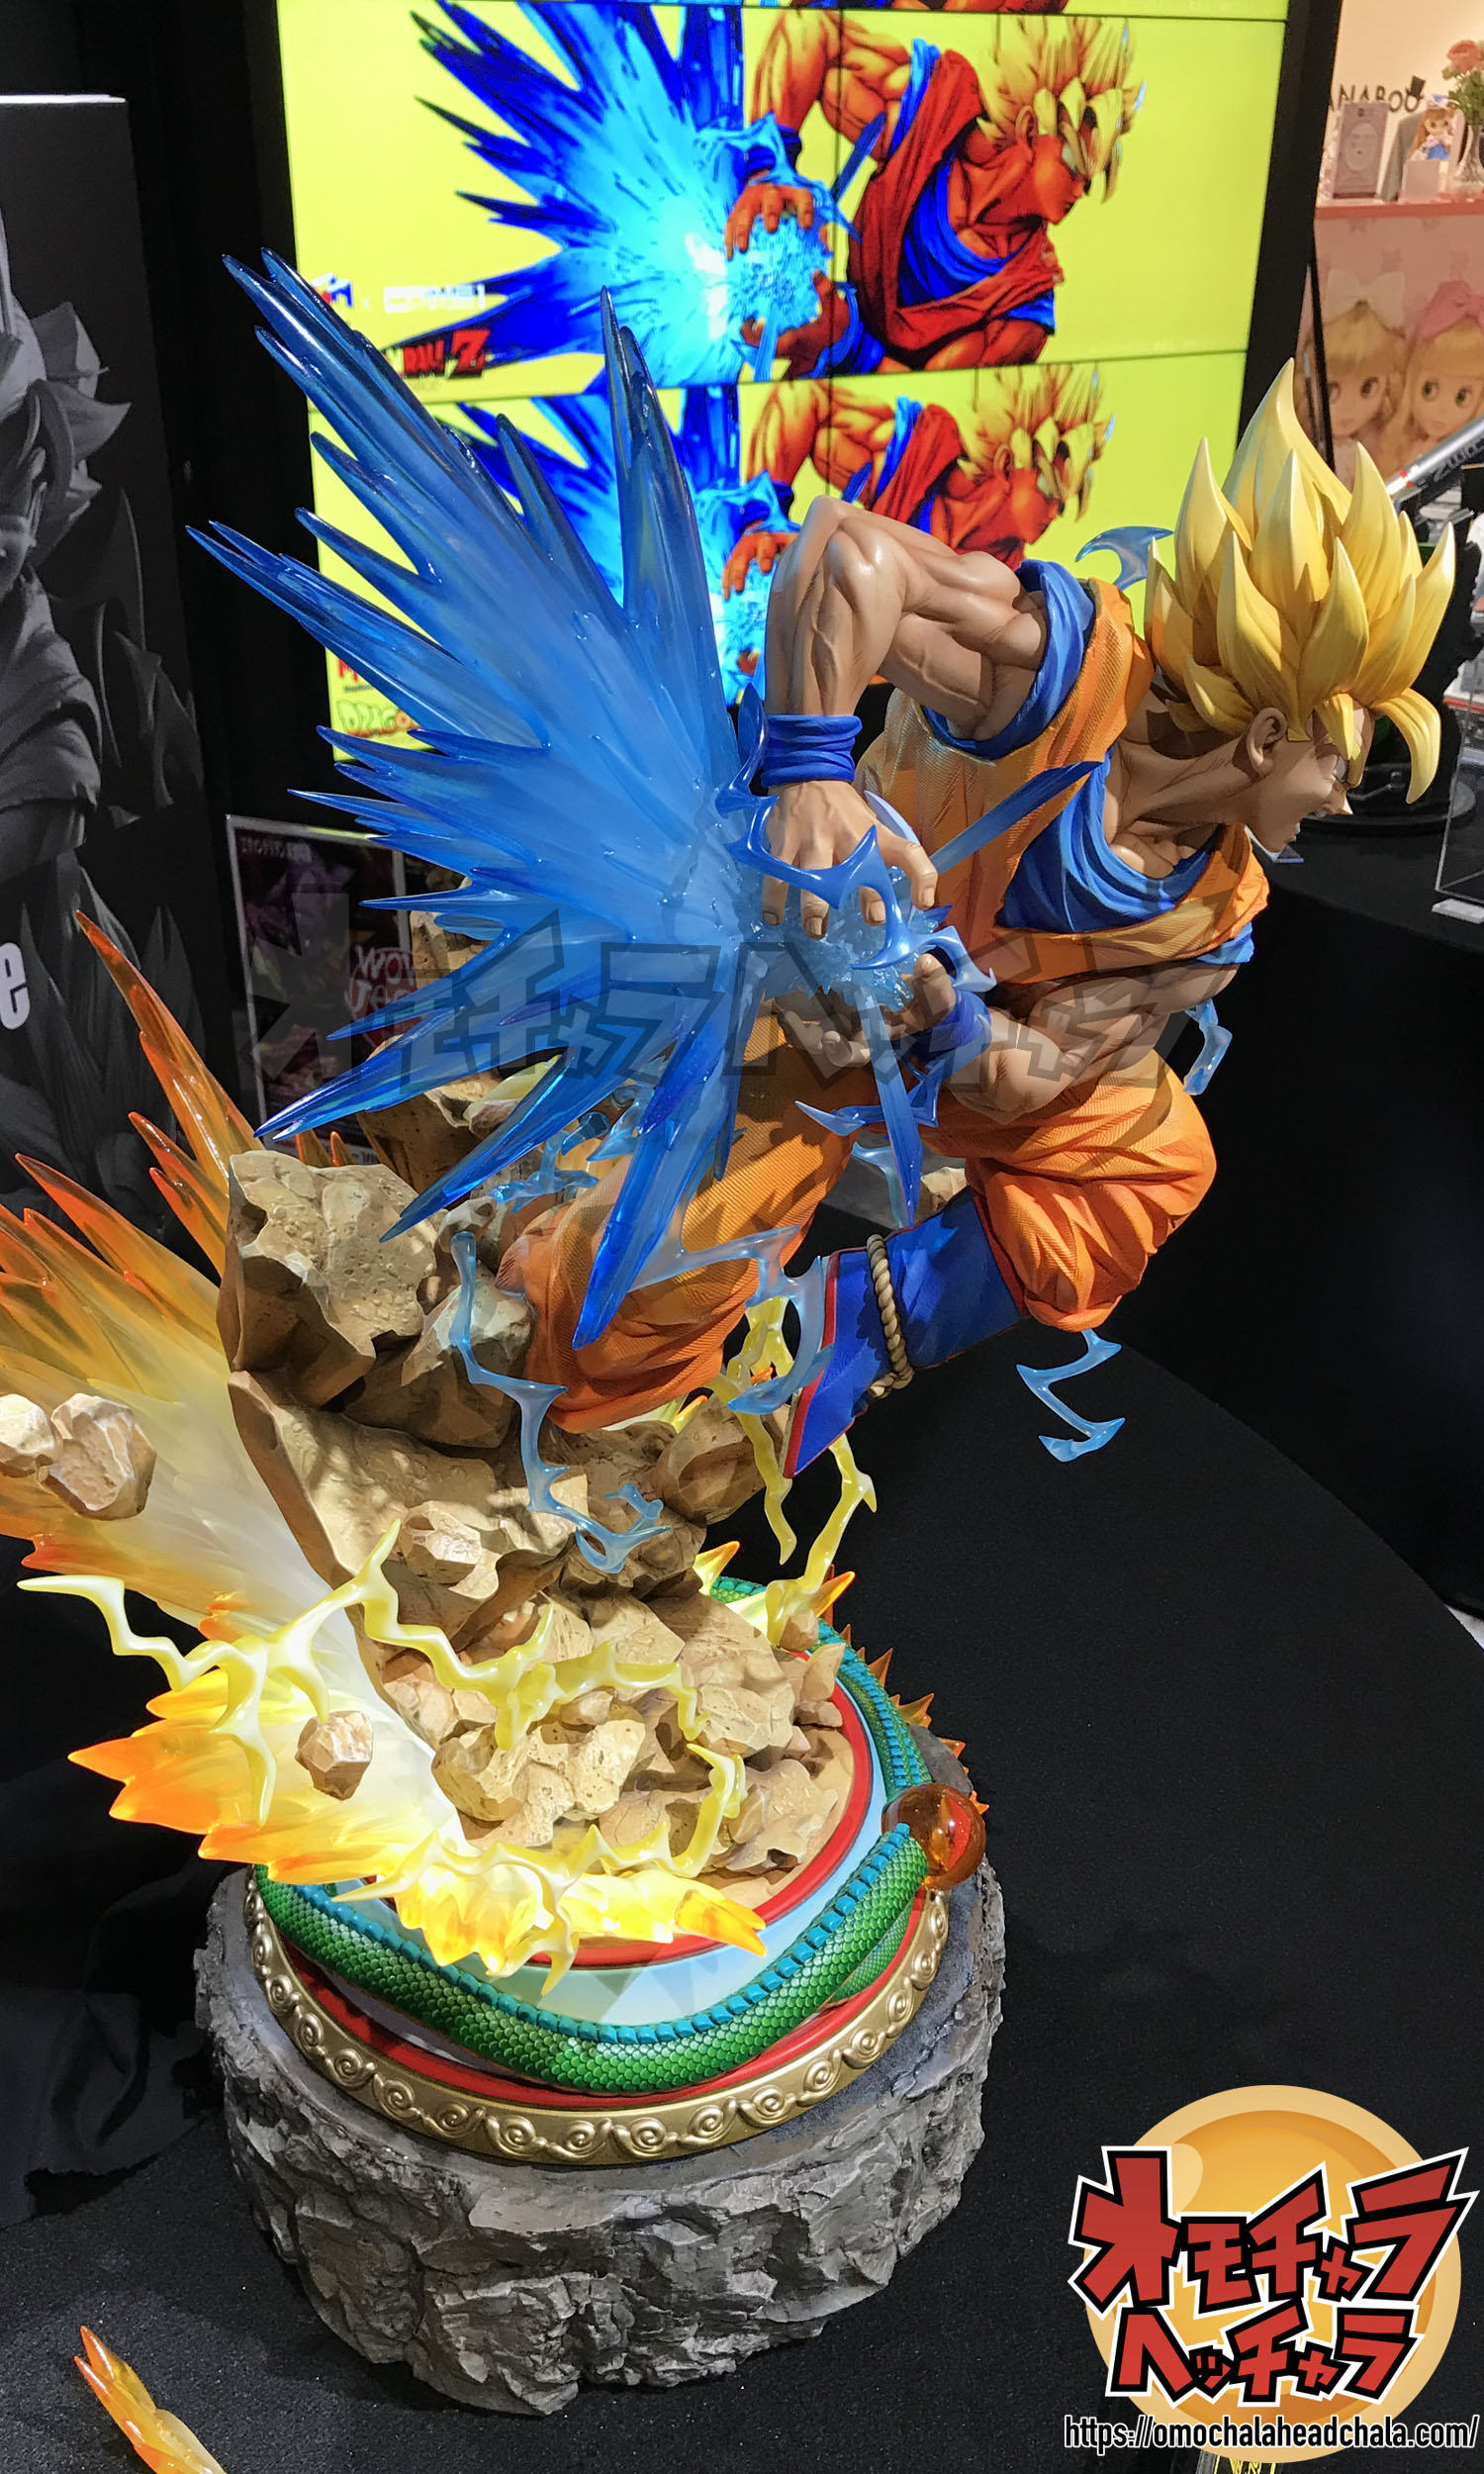 ドラゴンボールフィギュアレビューブログのPrime1Studio(プライムワンスタジオ)×MegaHouse(メガハウス)孫悟空“超サイヤ人”DX版